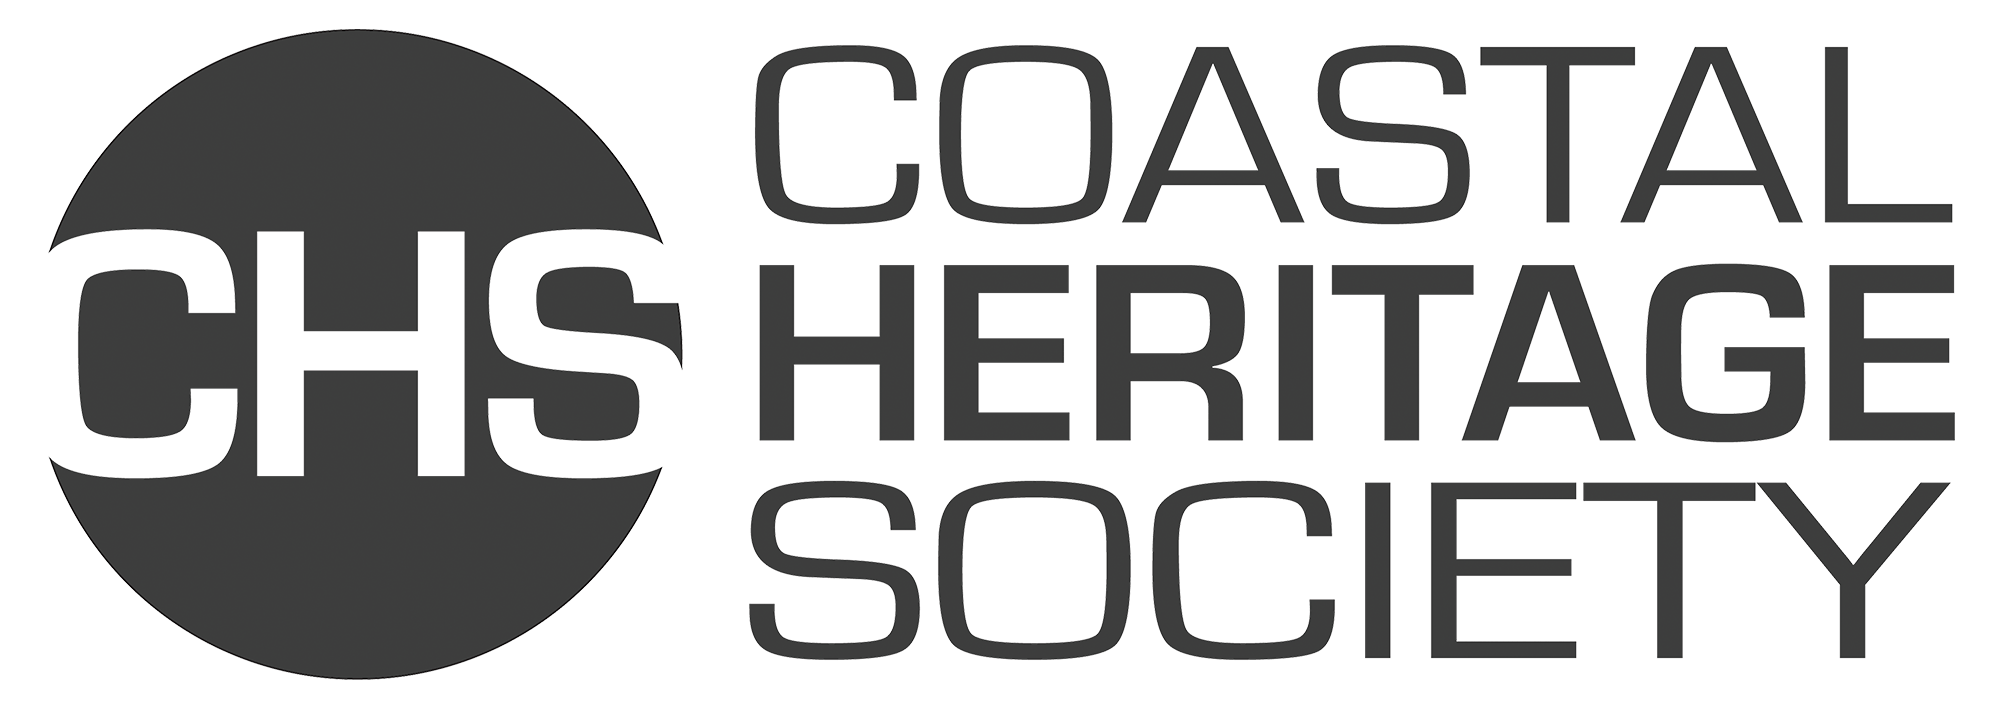 Coastal Heritage Society Logo